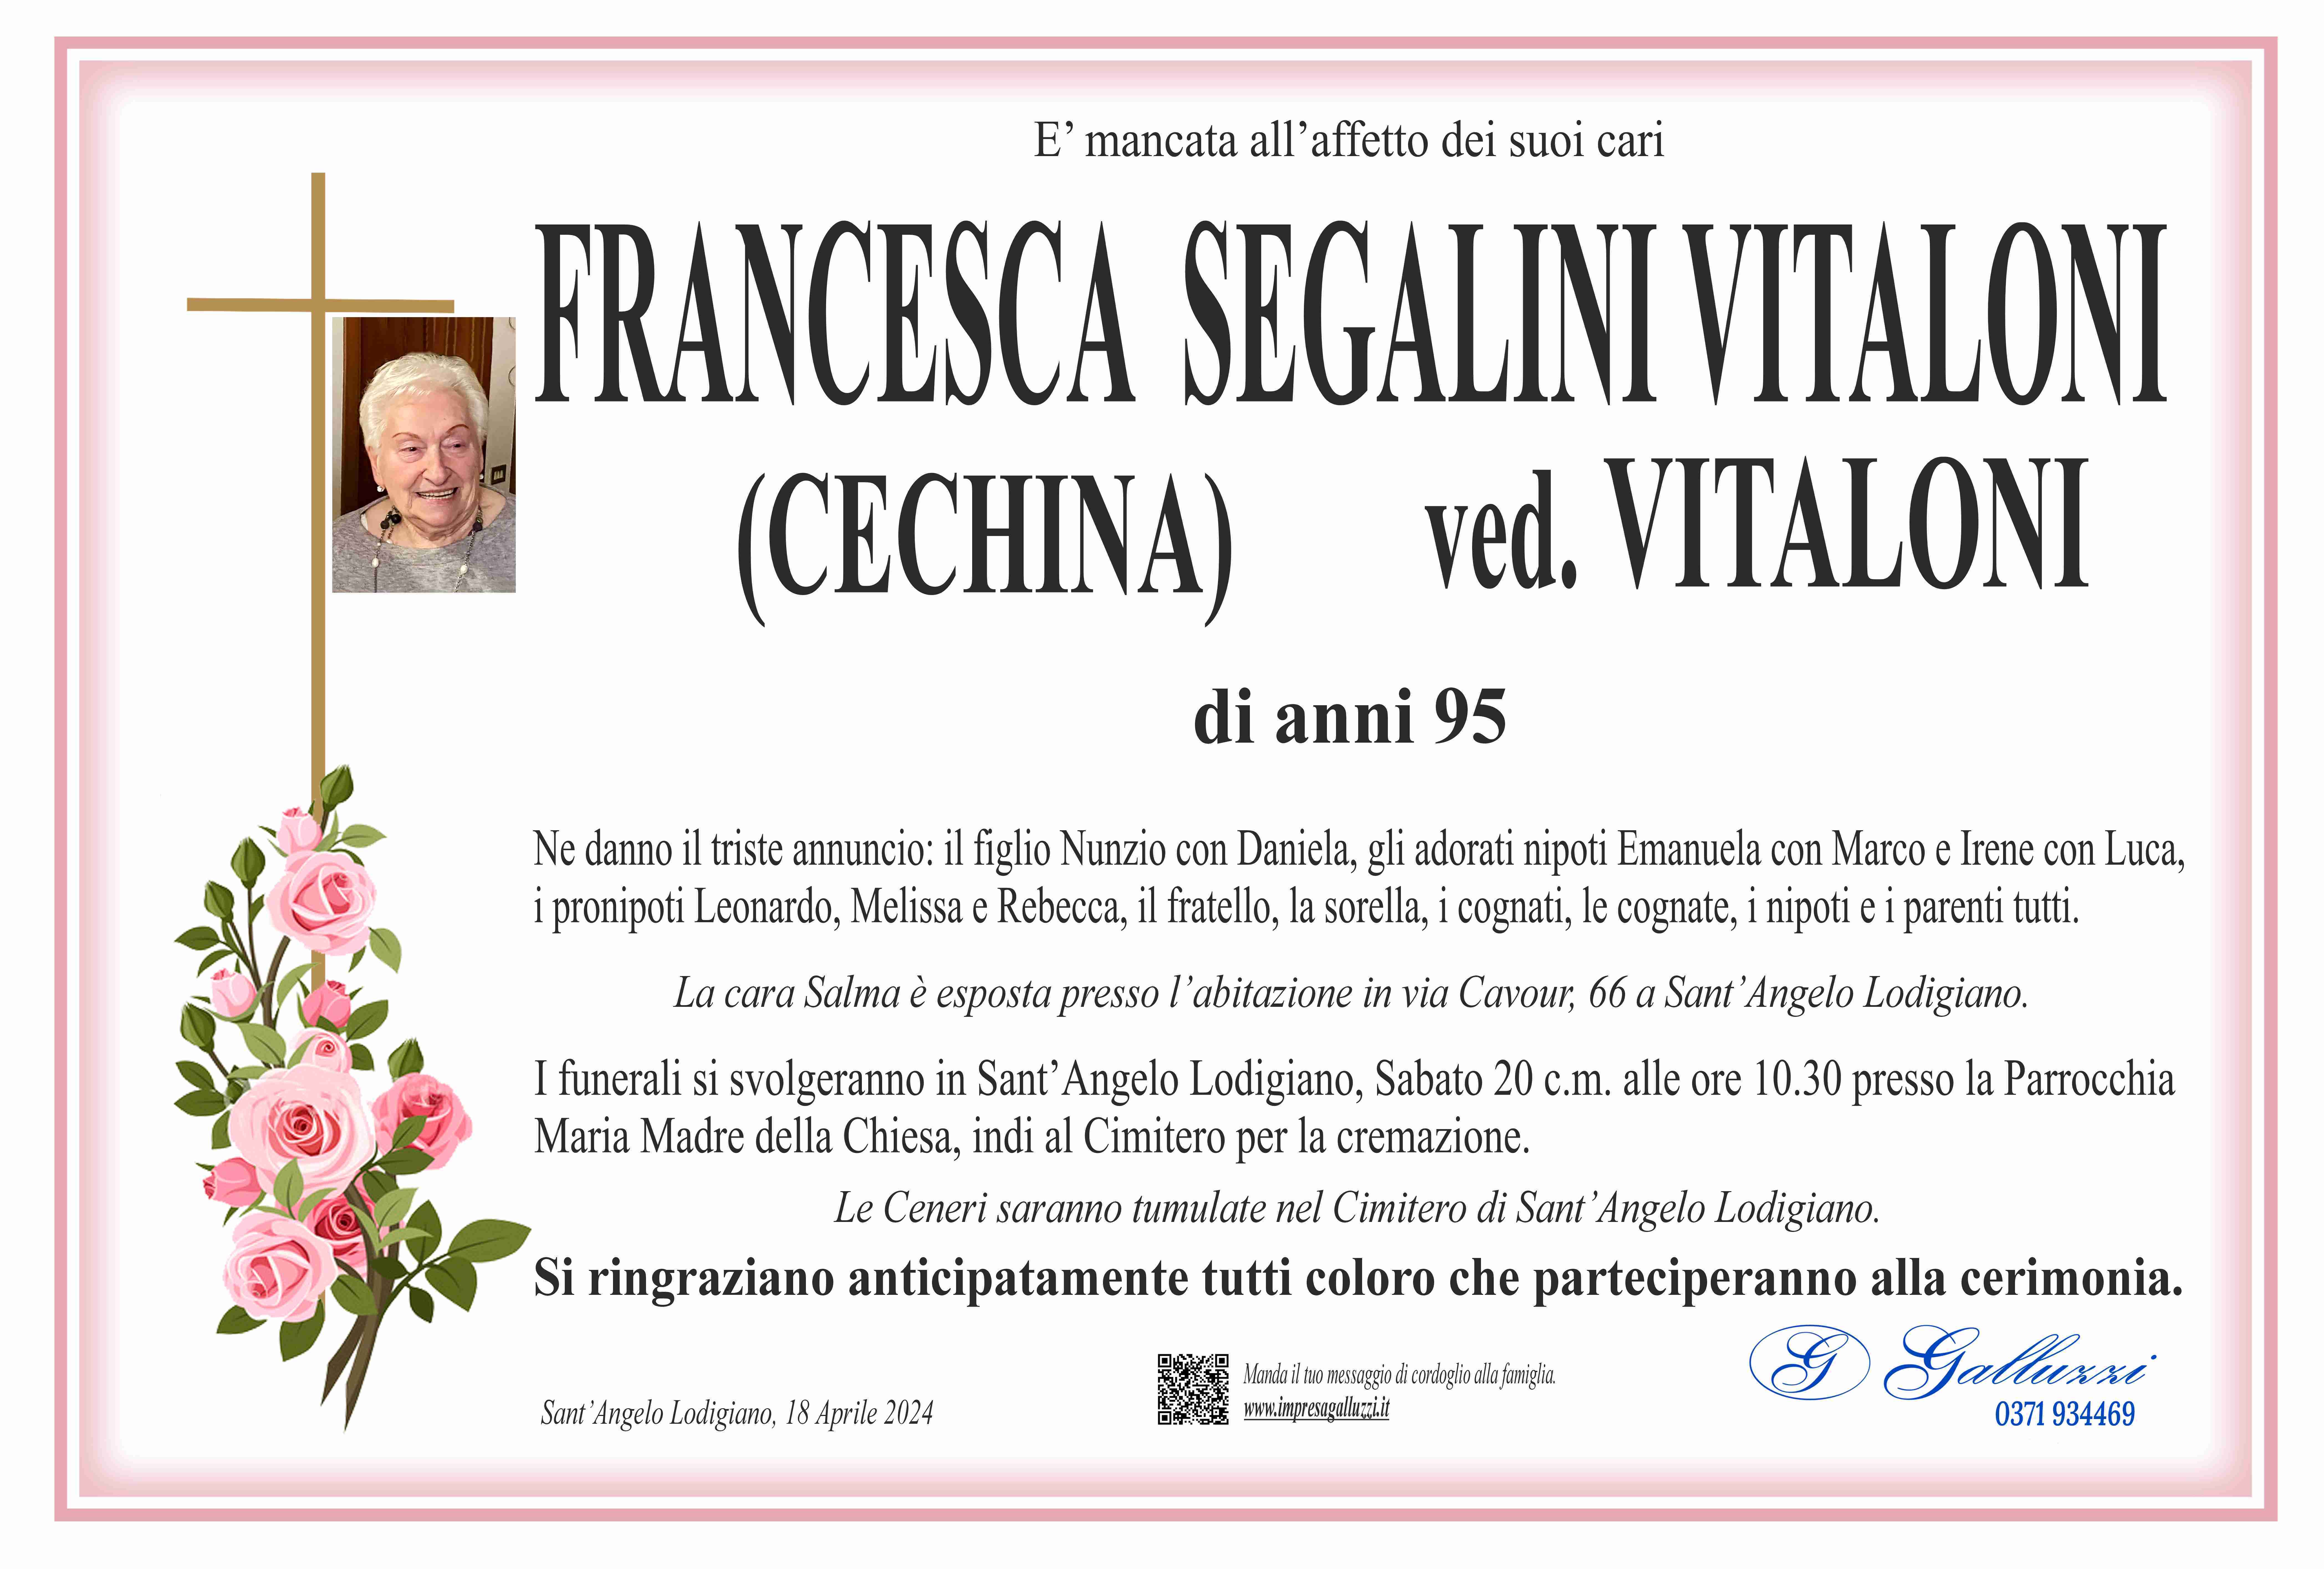 Francesca Segalini Vitaloni